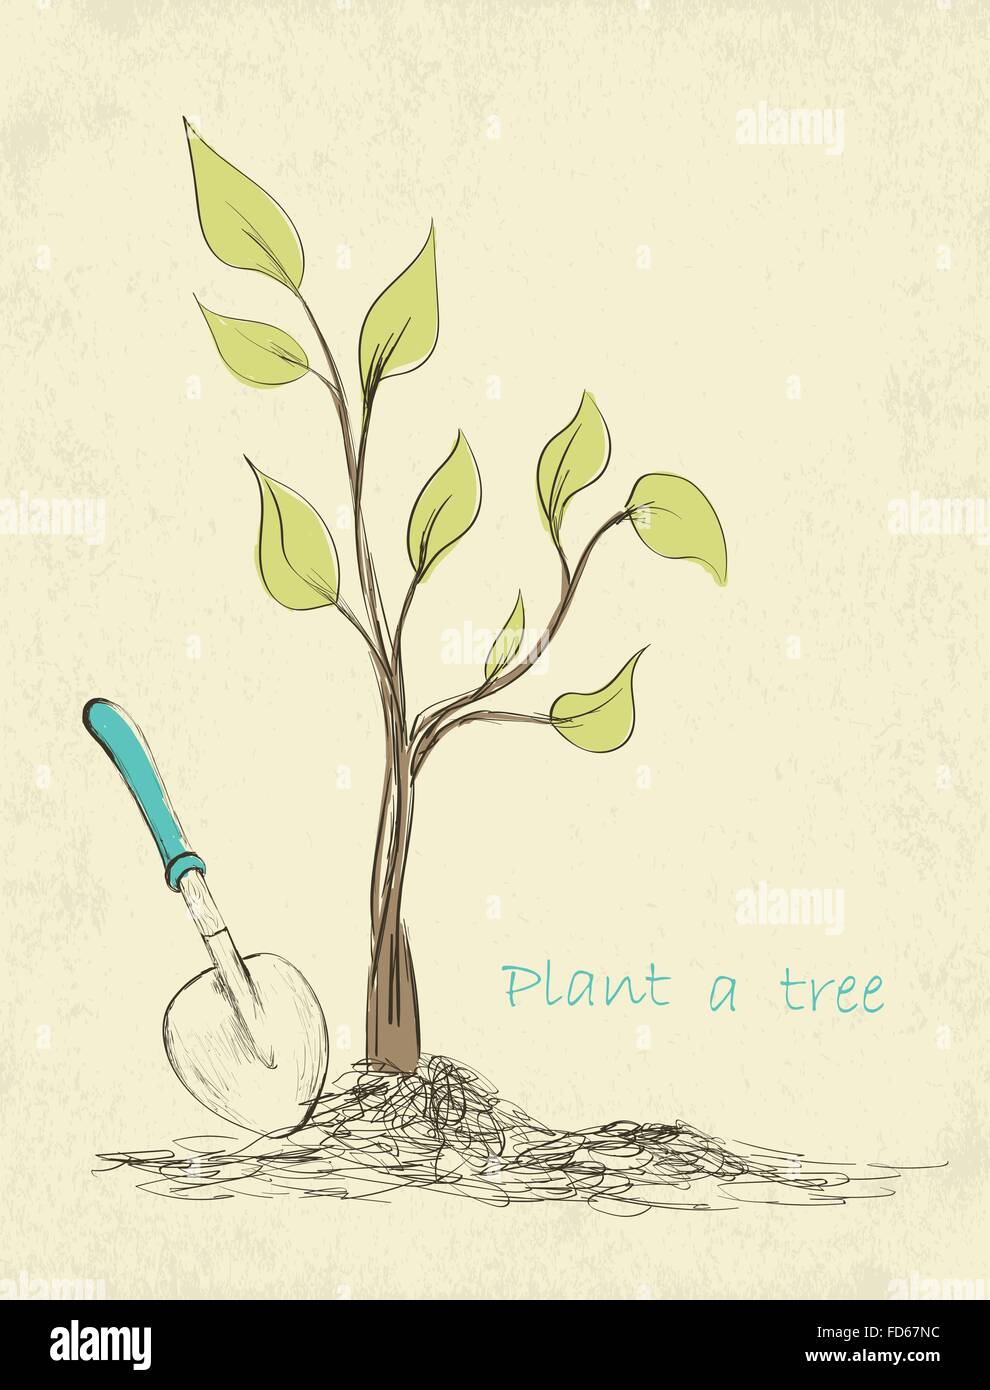 Frühling im Garten Zeitkarte. Hand gezeichnet Baumpflanzung. Vektor-illustration Stock Vektor